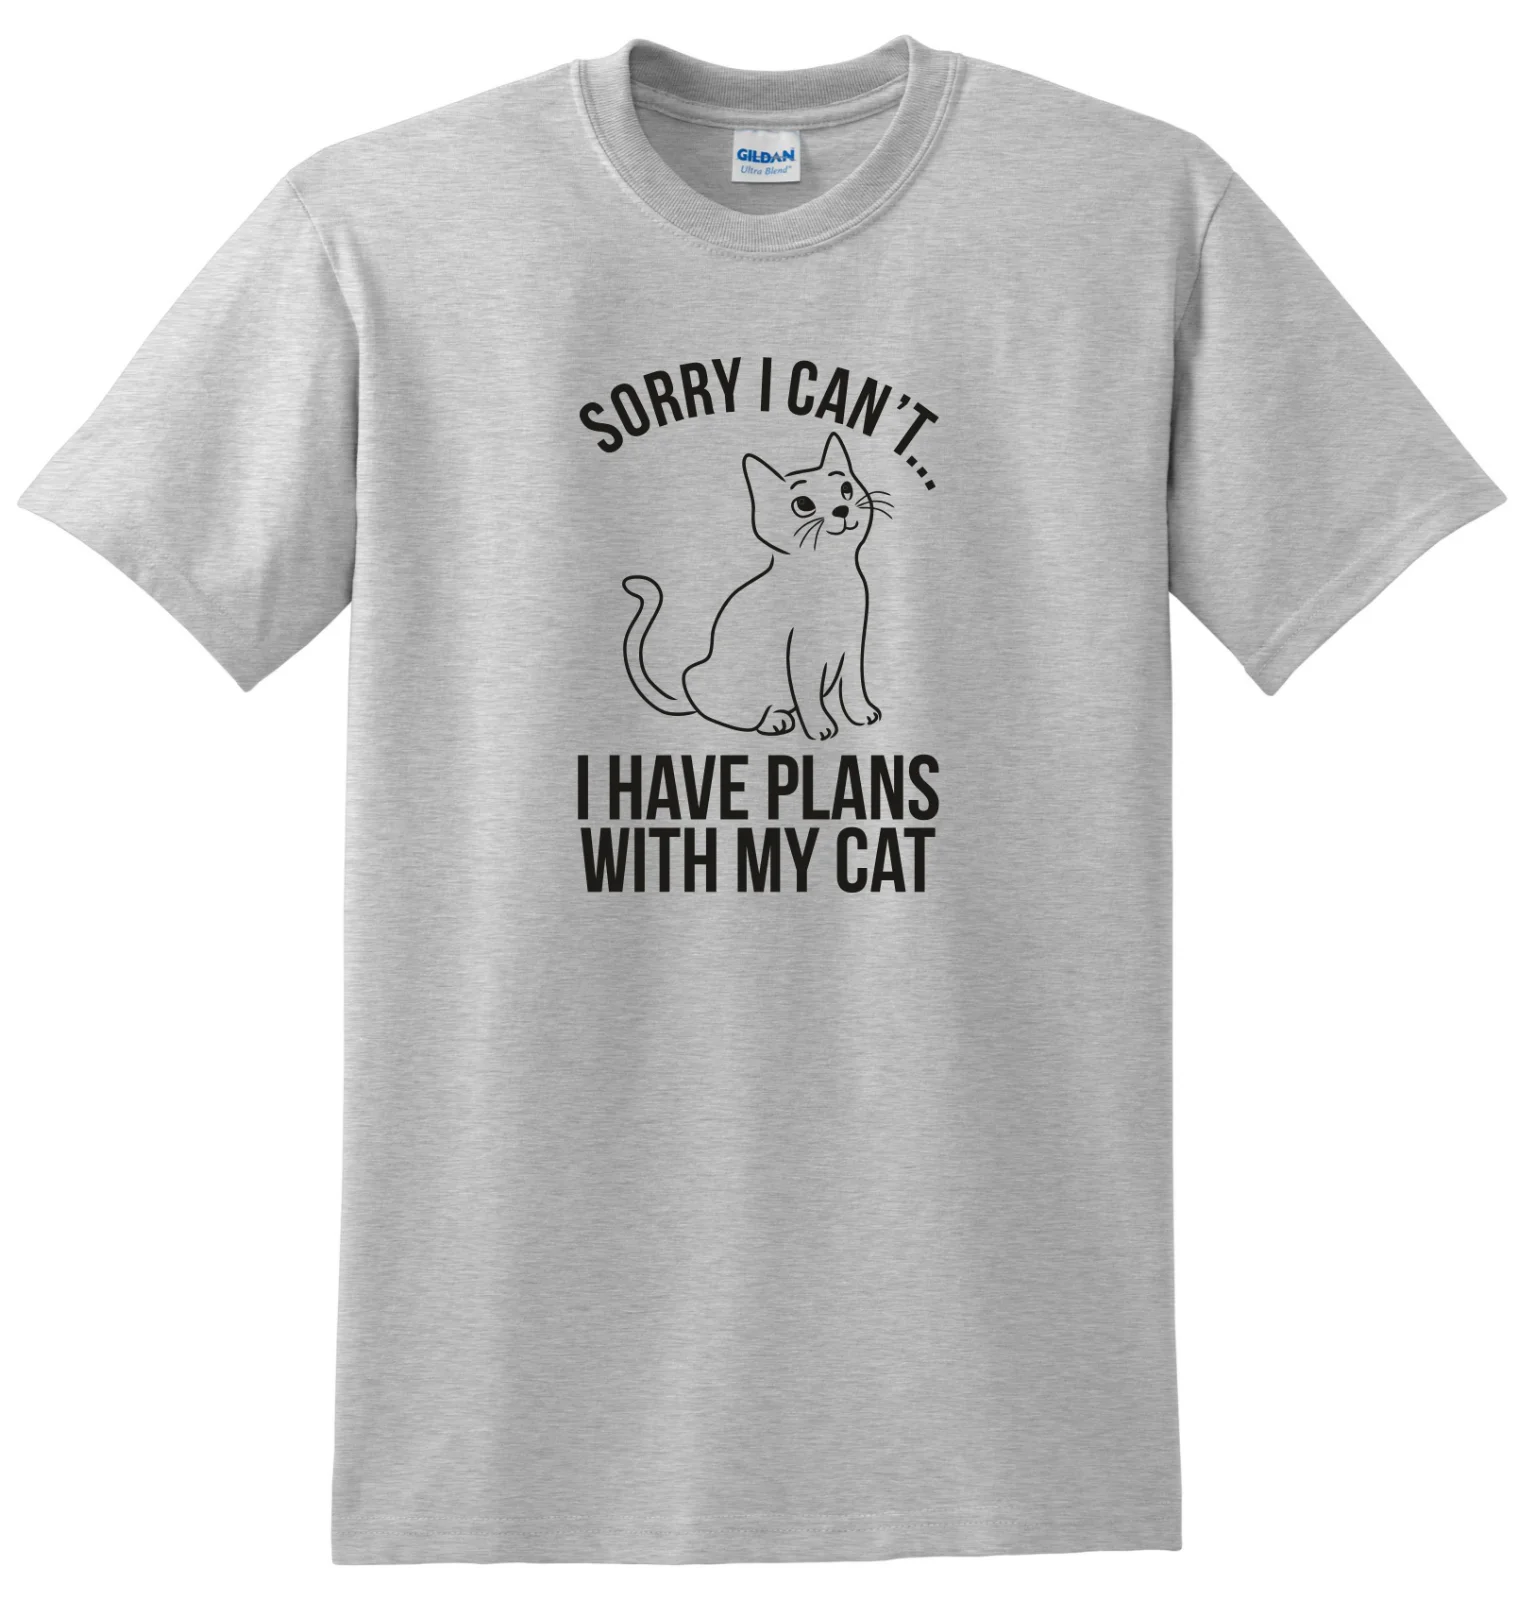 К сожалению, я не могу есть планы с My Cat футболка унисекс-ShirtStreetwear Забавный принт Костюмы хип-Tope Ман футболка Футболки Мода